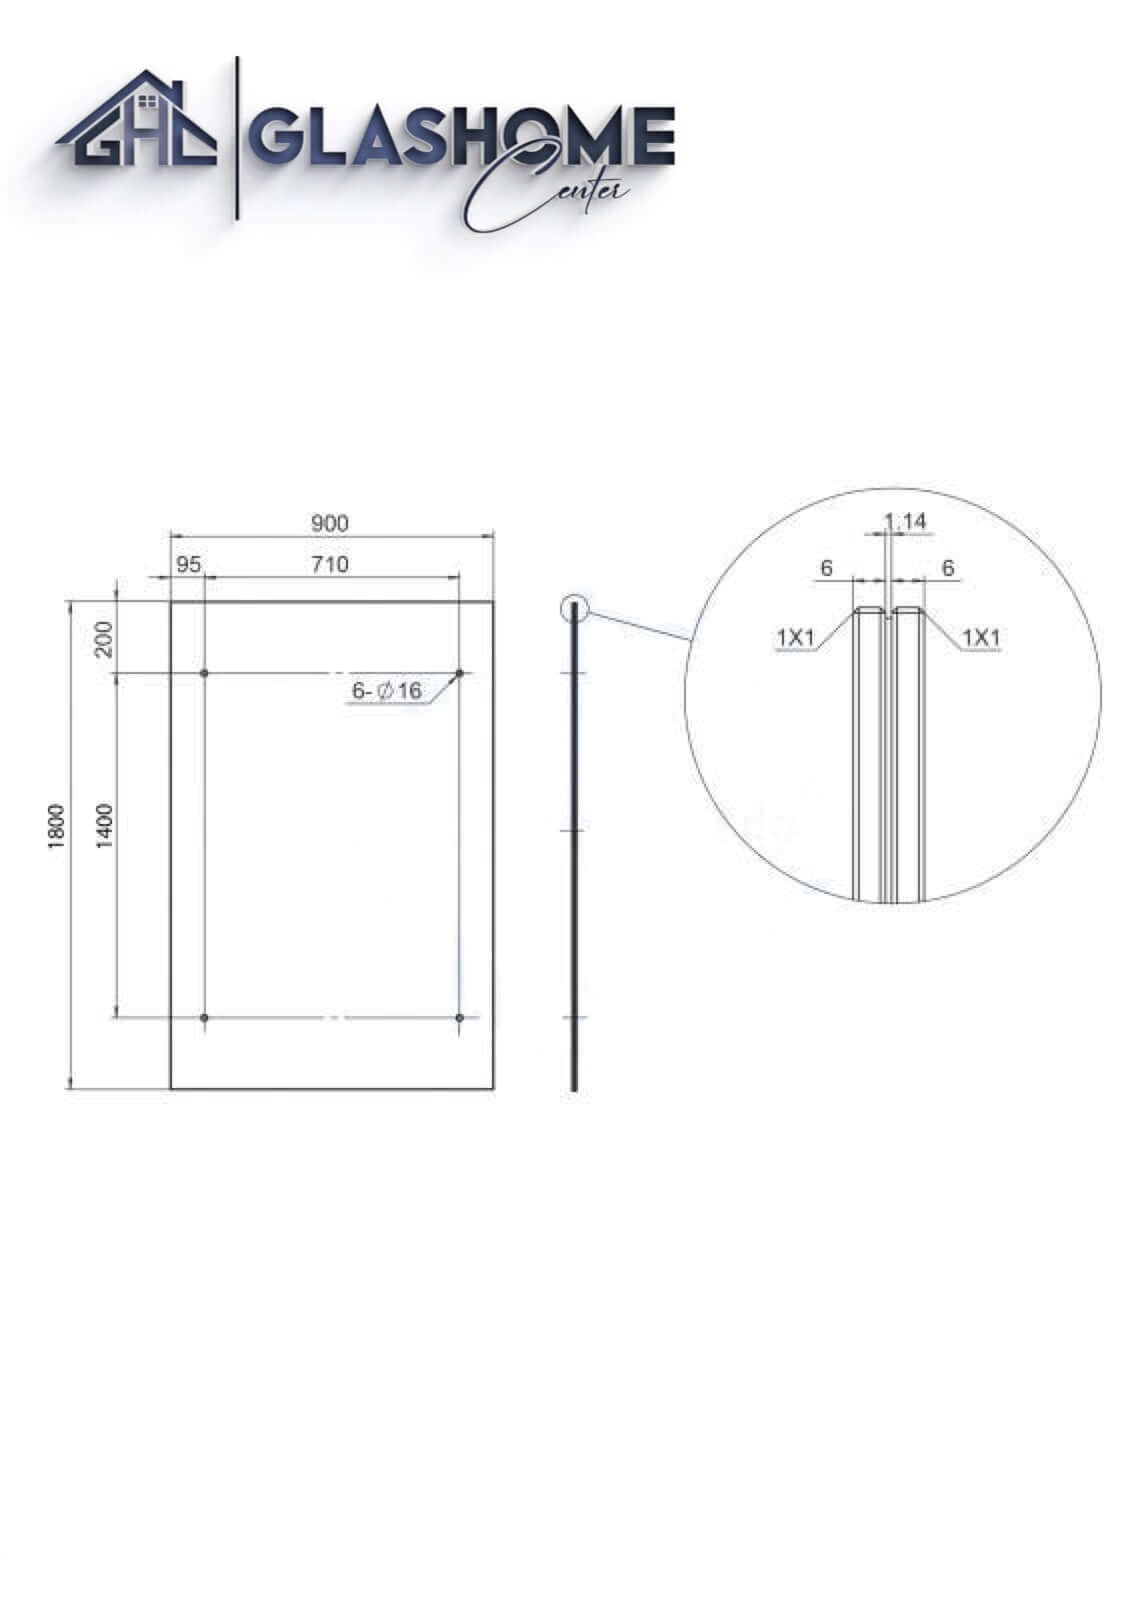 GlasHomeCenter - Glasvordach - Grauglas - 180x90cm - 13.1mm VSG - incl. 2 Edelstahlhalterungen variante "Rom"